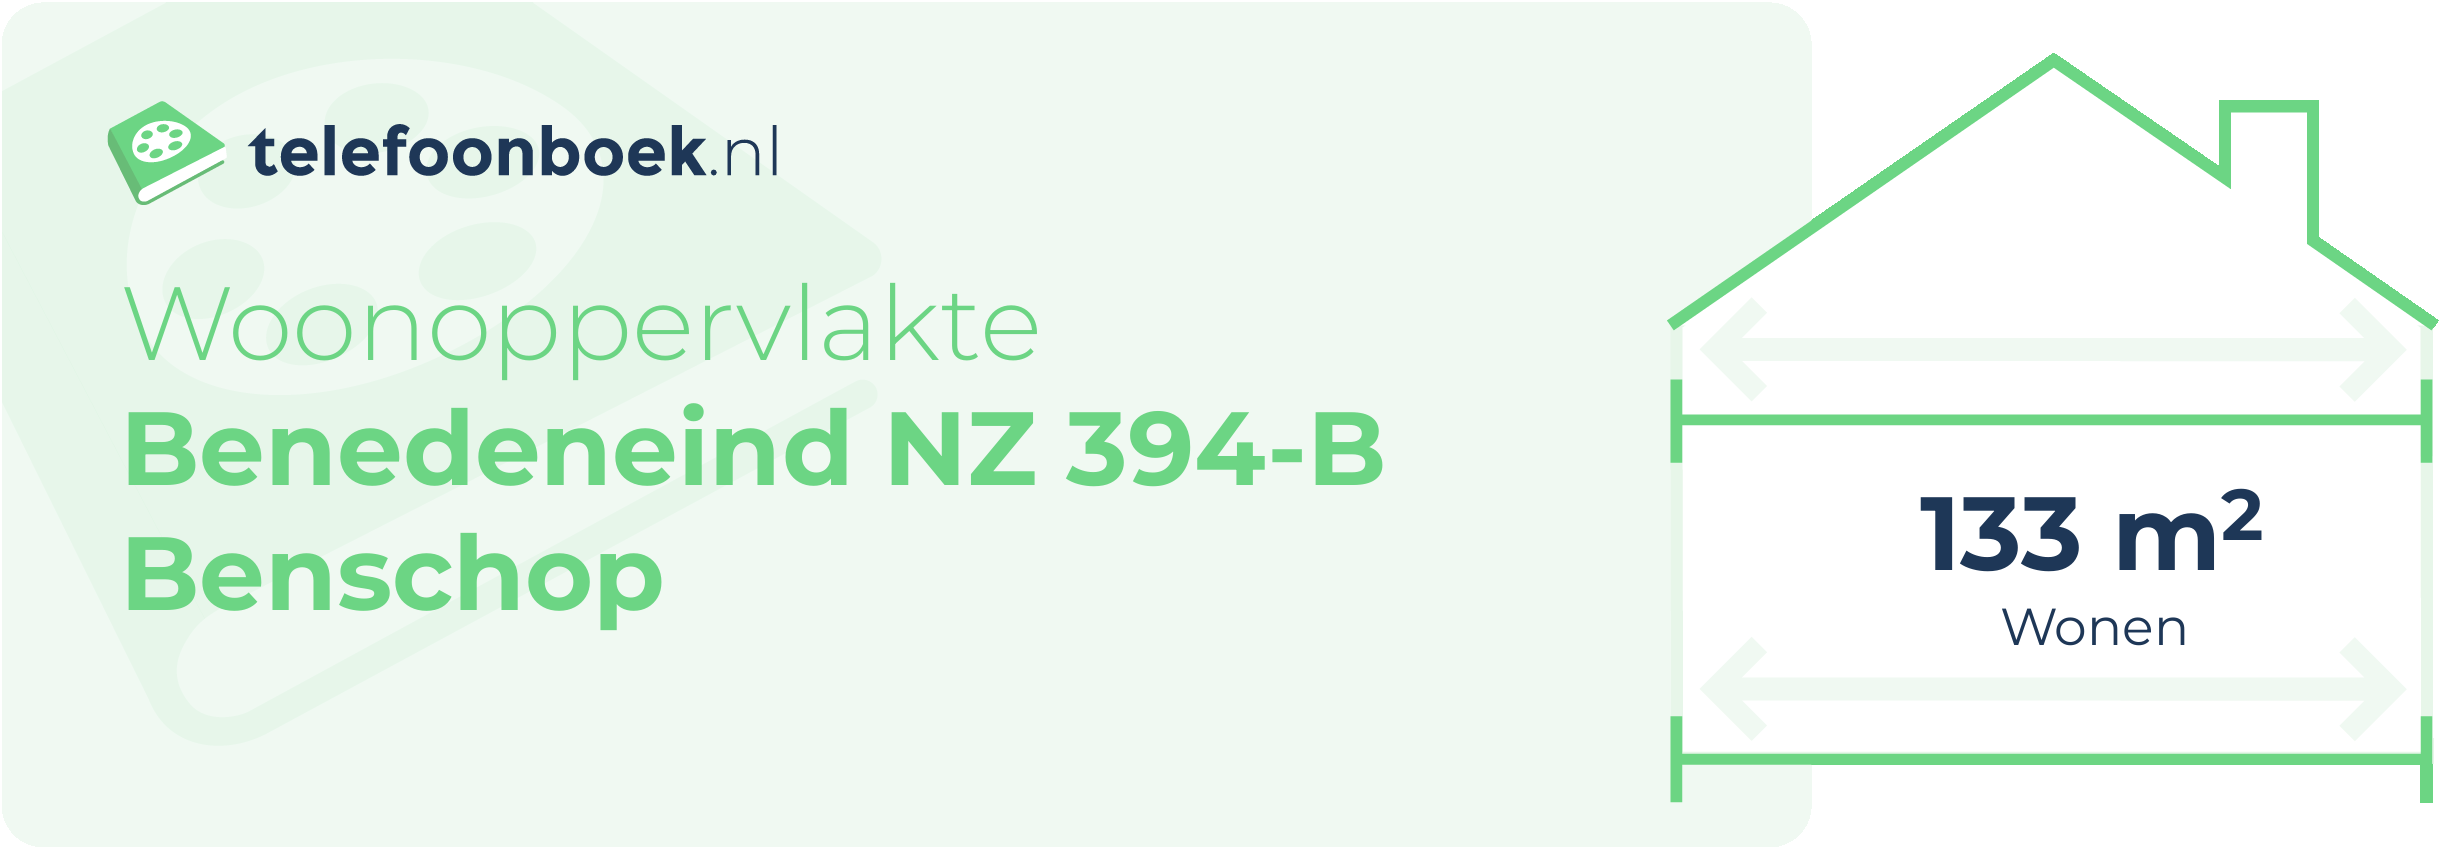 Woonoppervlakte Benedeneind NZ 394-B Benschop